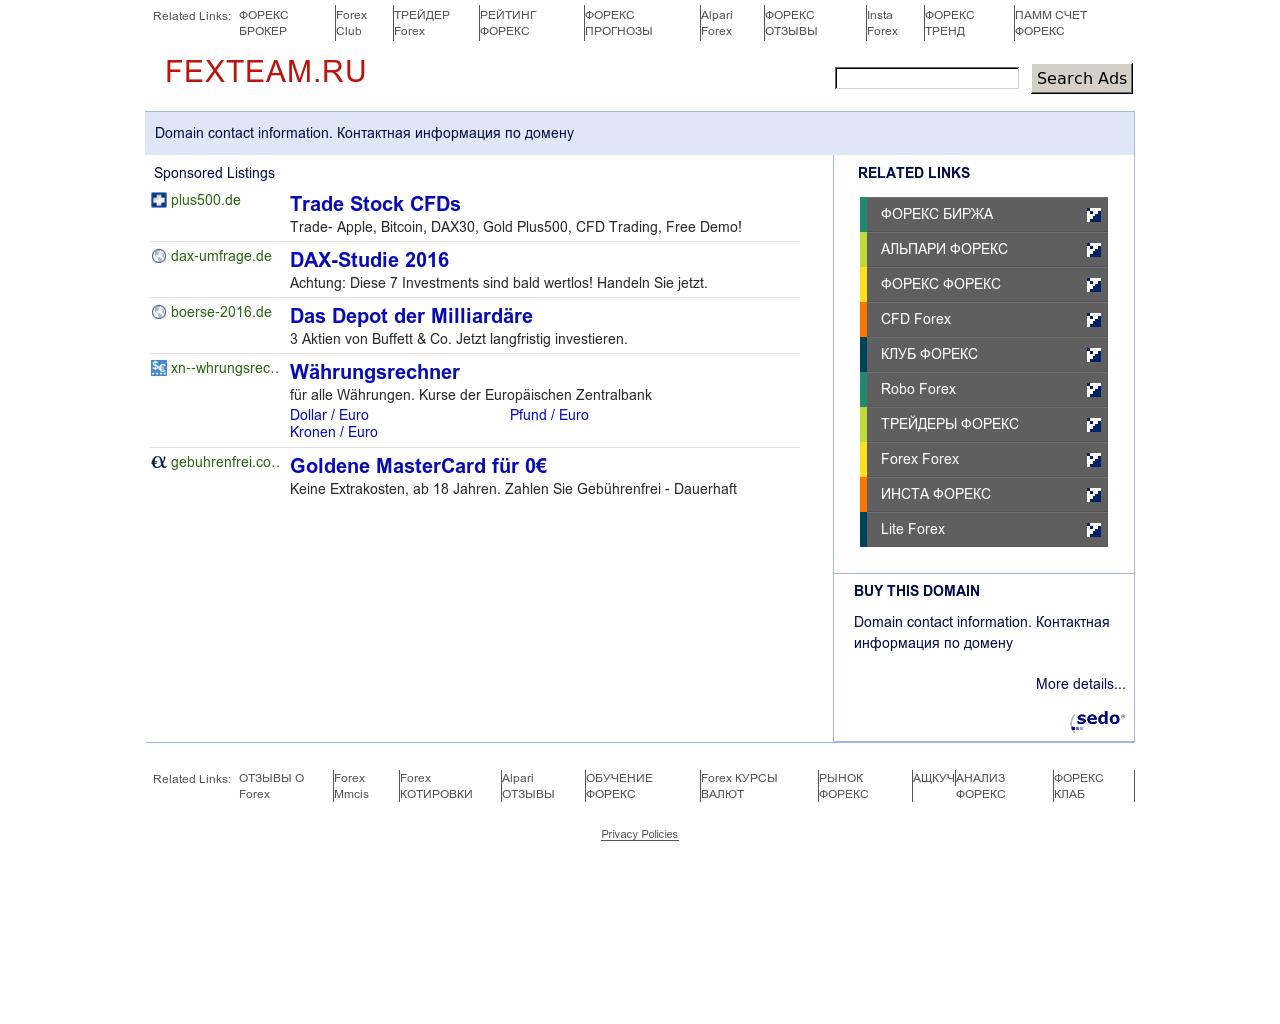 Изображение сайта fexteam.ru в разрешении 1280x1024